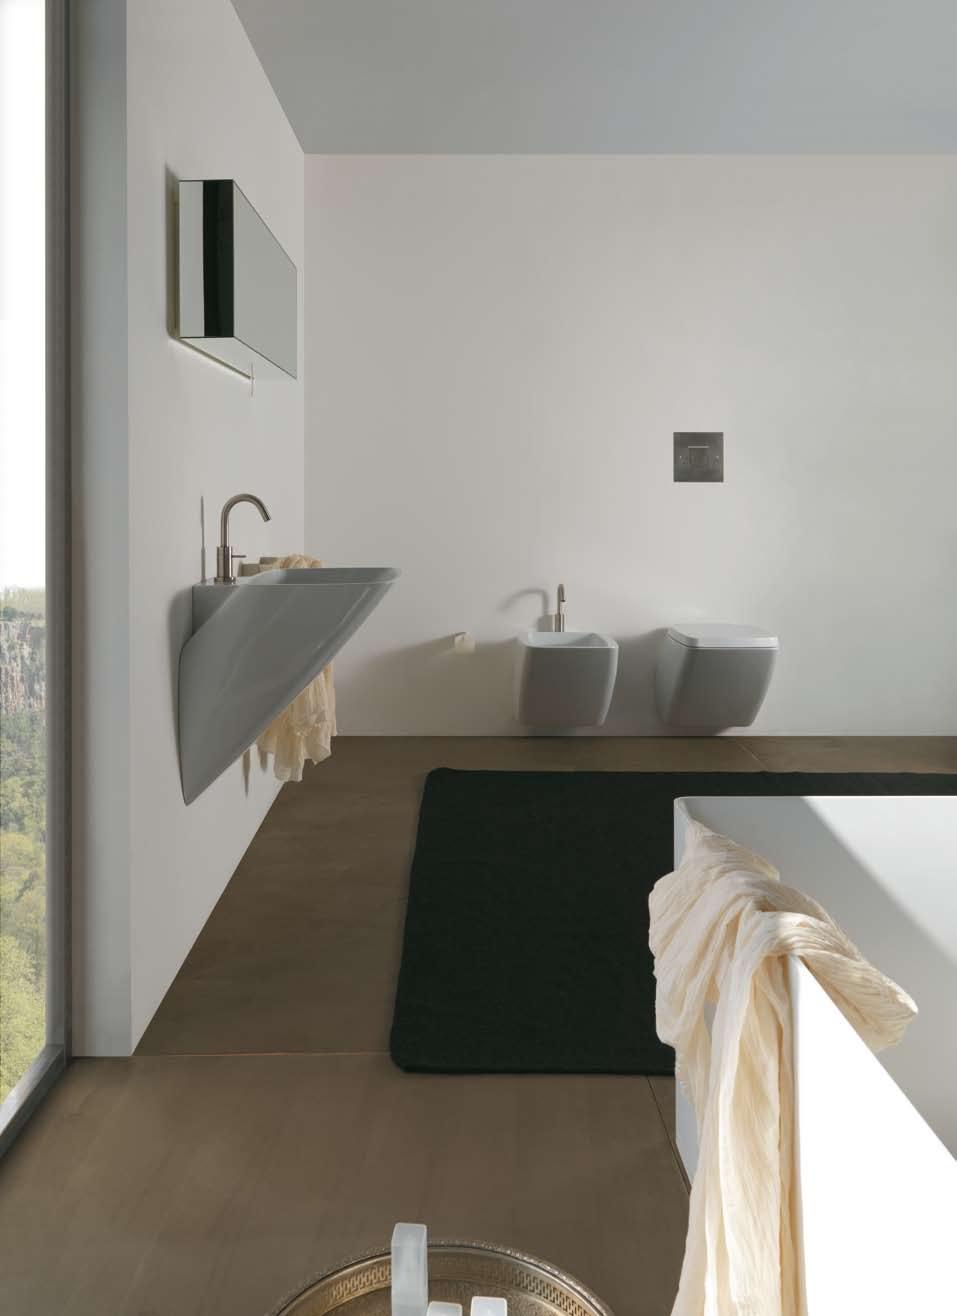 12_13 lavabo sospeso con piano rubinetteria wall hung basin with tap hole vaso e bidet sospeso con piano rubinetteria